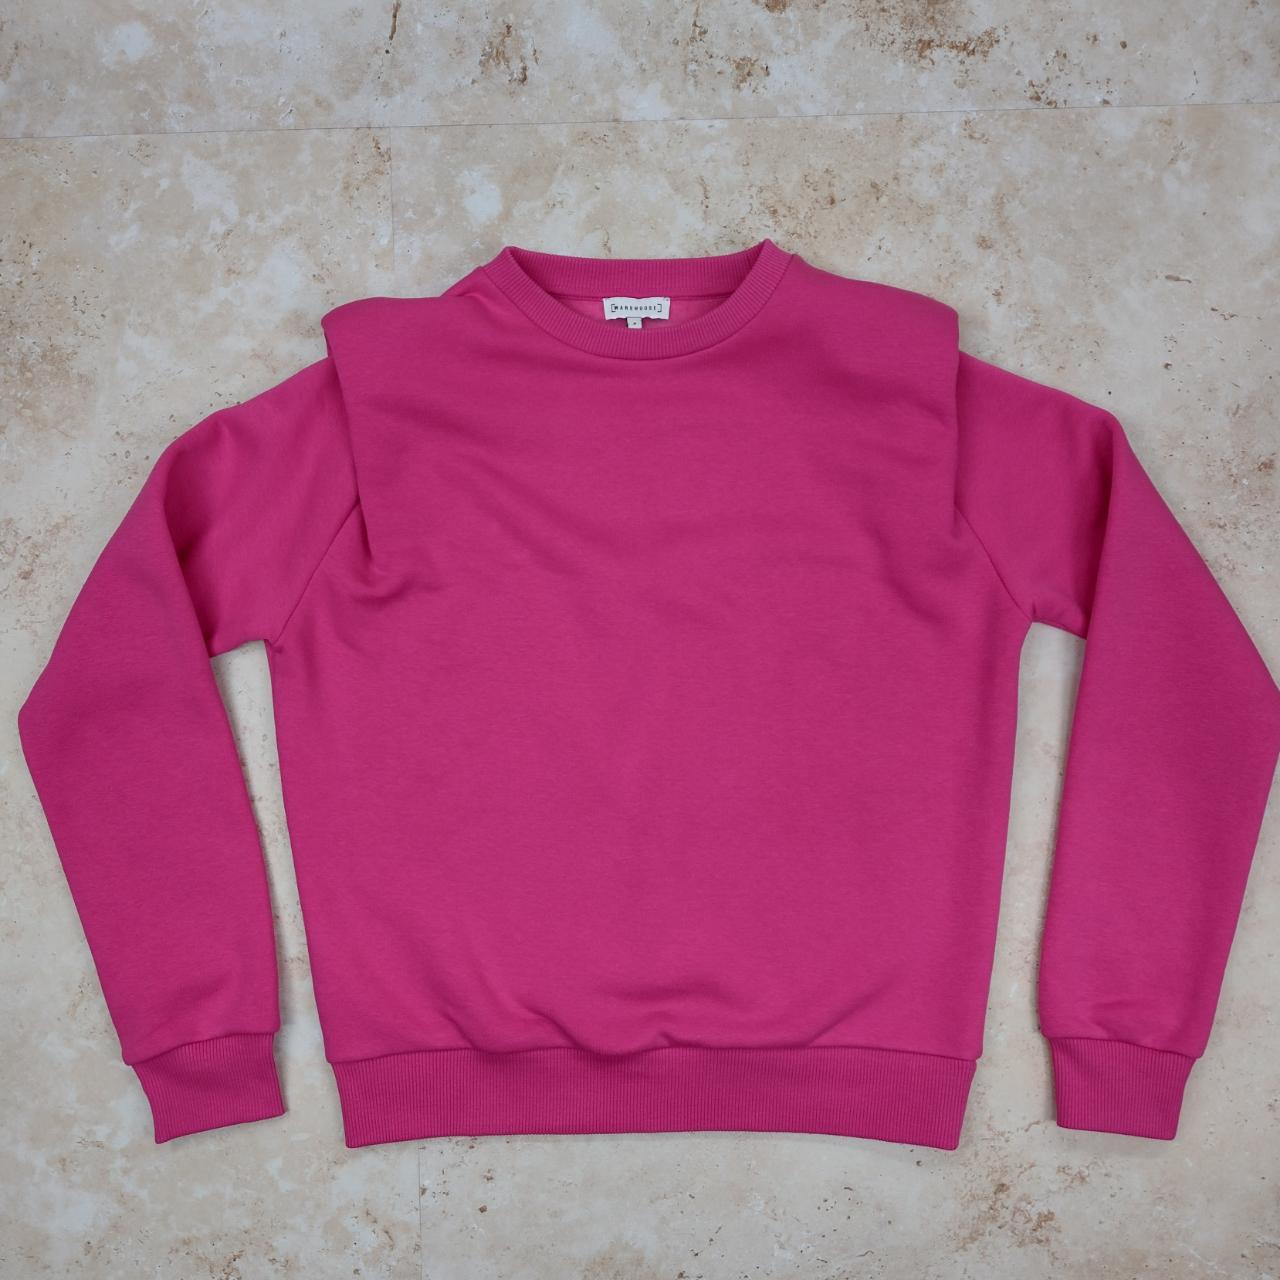 Warehouse Sweatshirt ~Hot pink, crew neck... - Depop